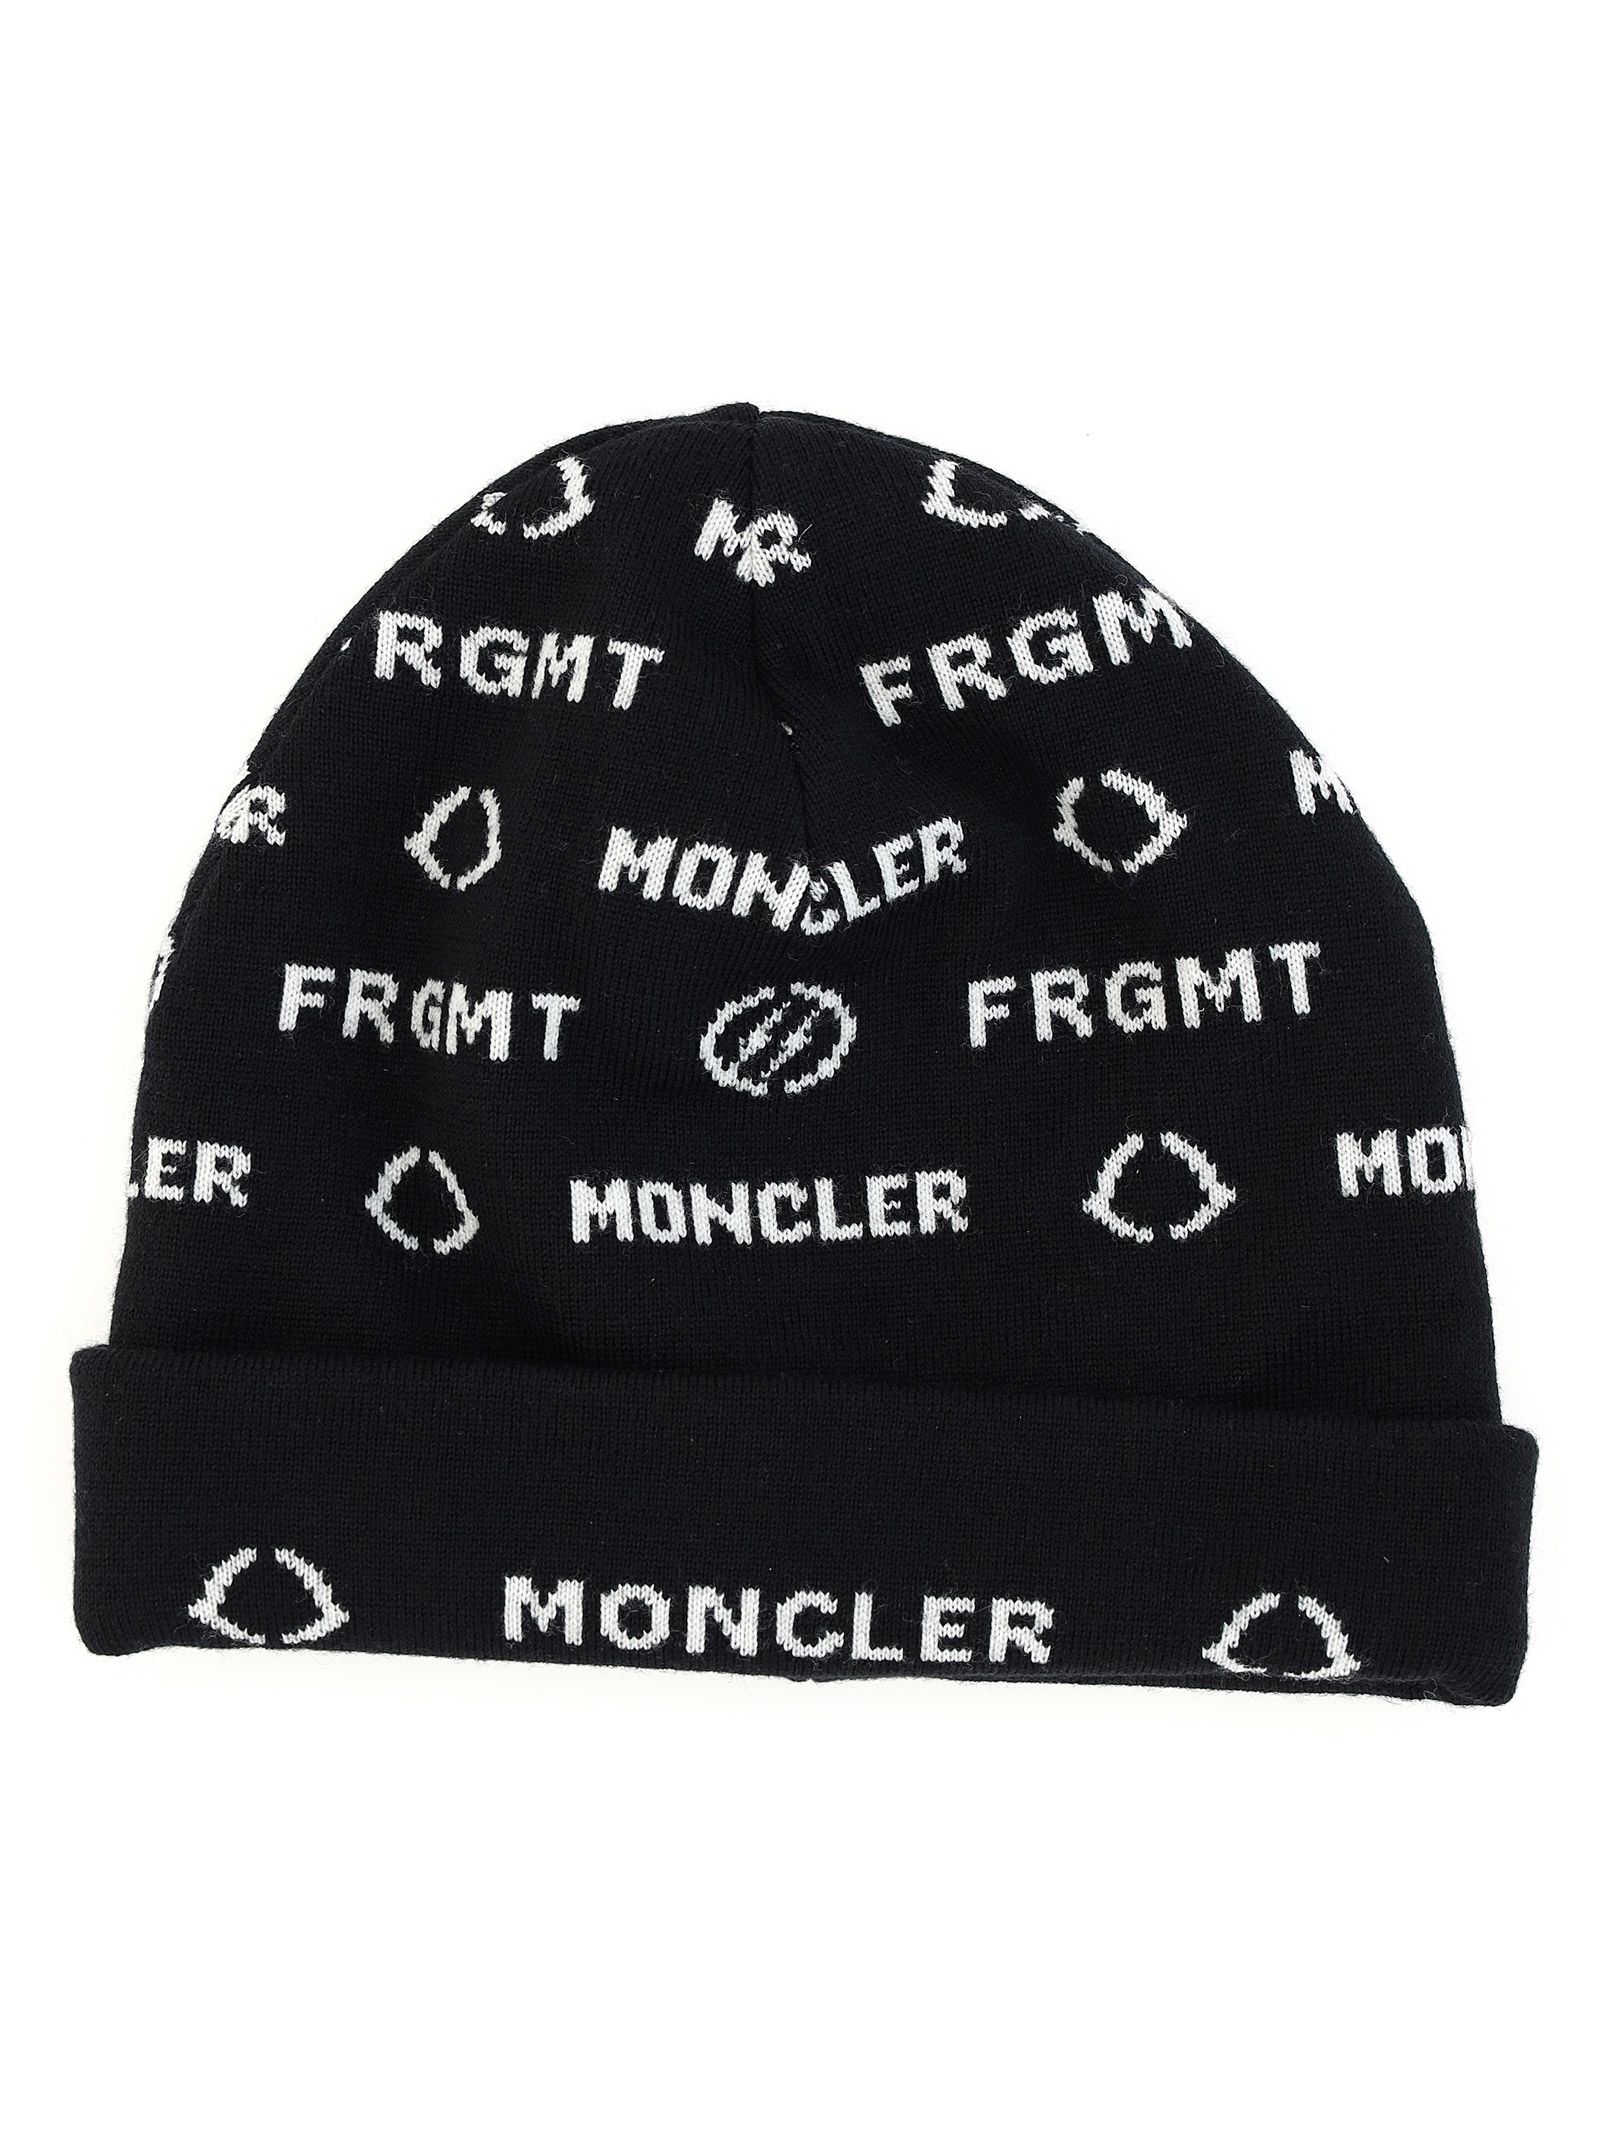 moncler hat sale